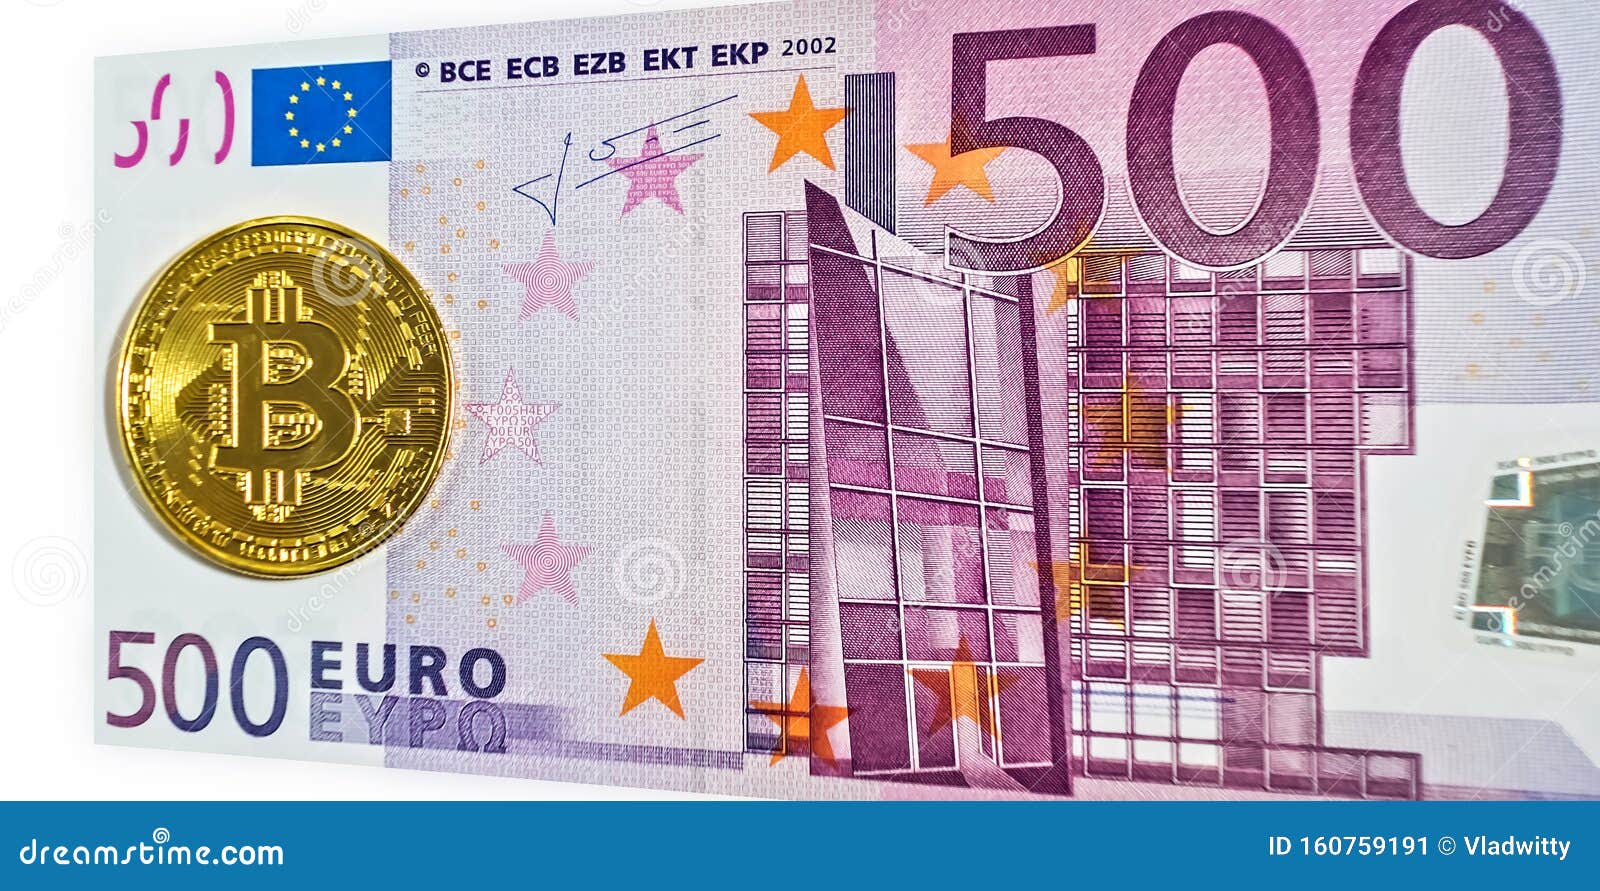 Convert EUR to BTCBAM - Euro to Bitcoin Bam Converter | CoinCodex